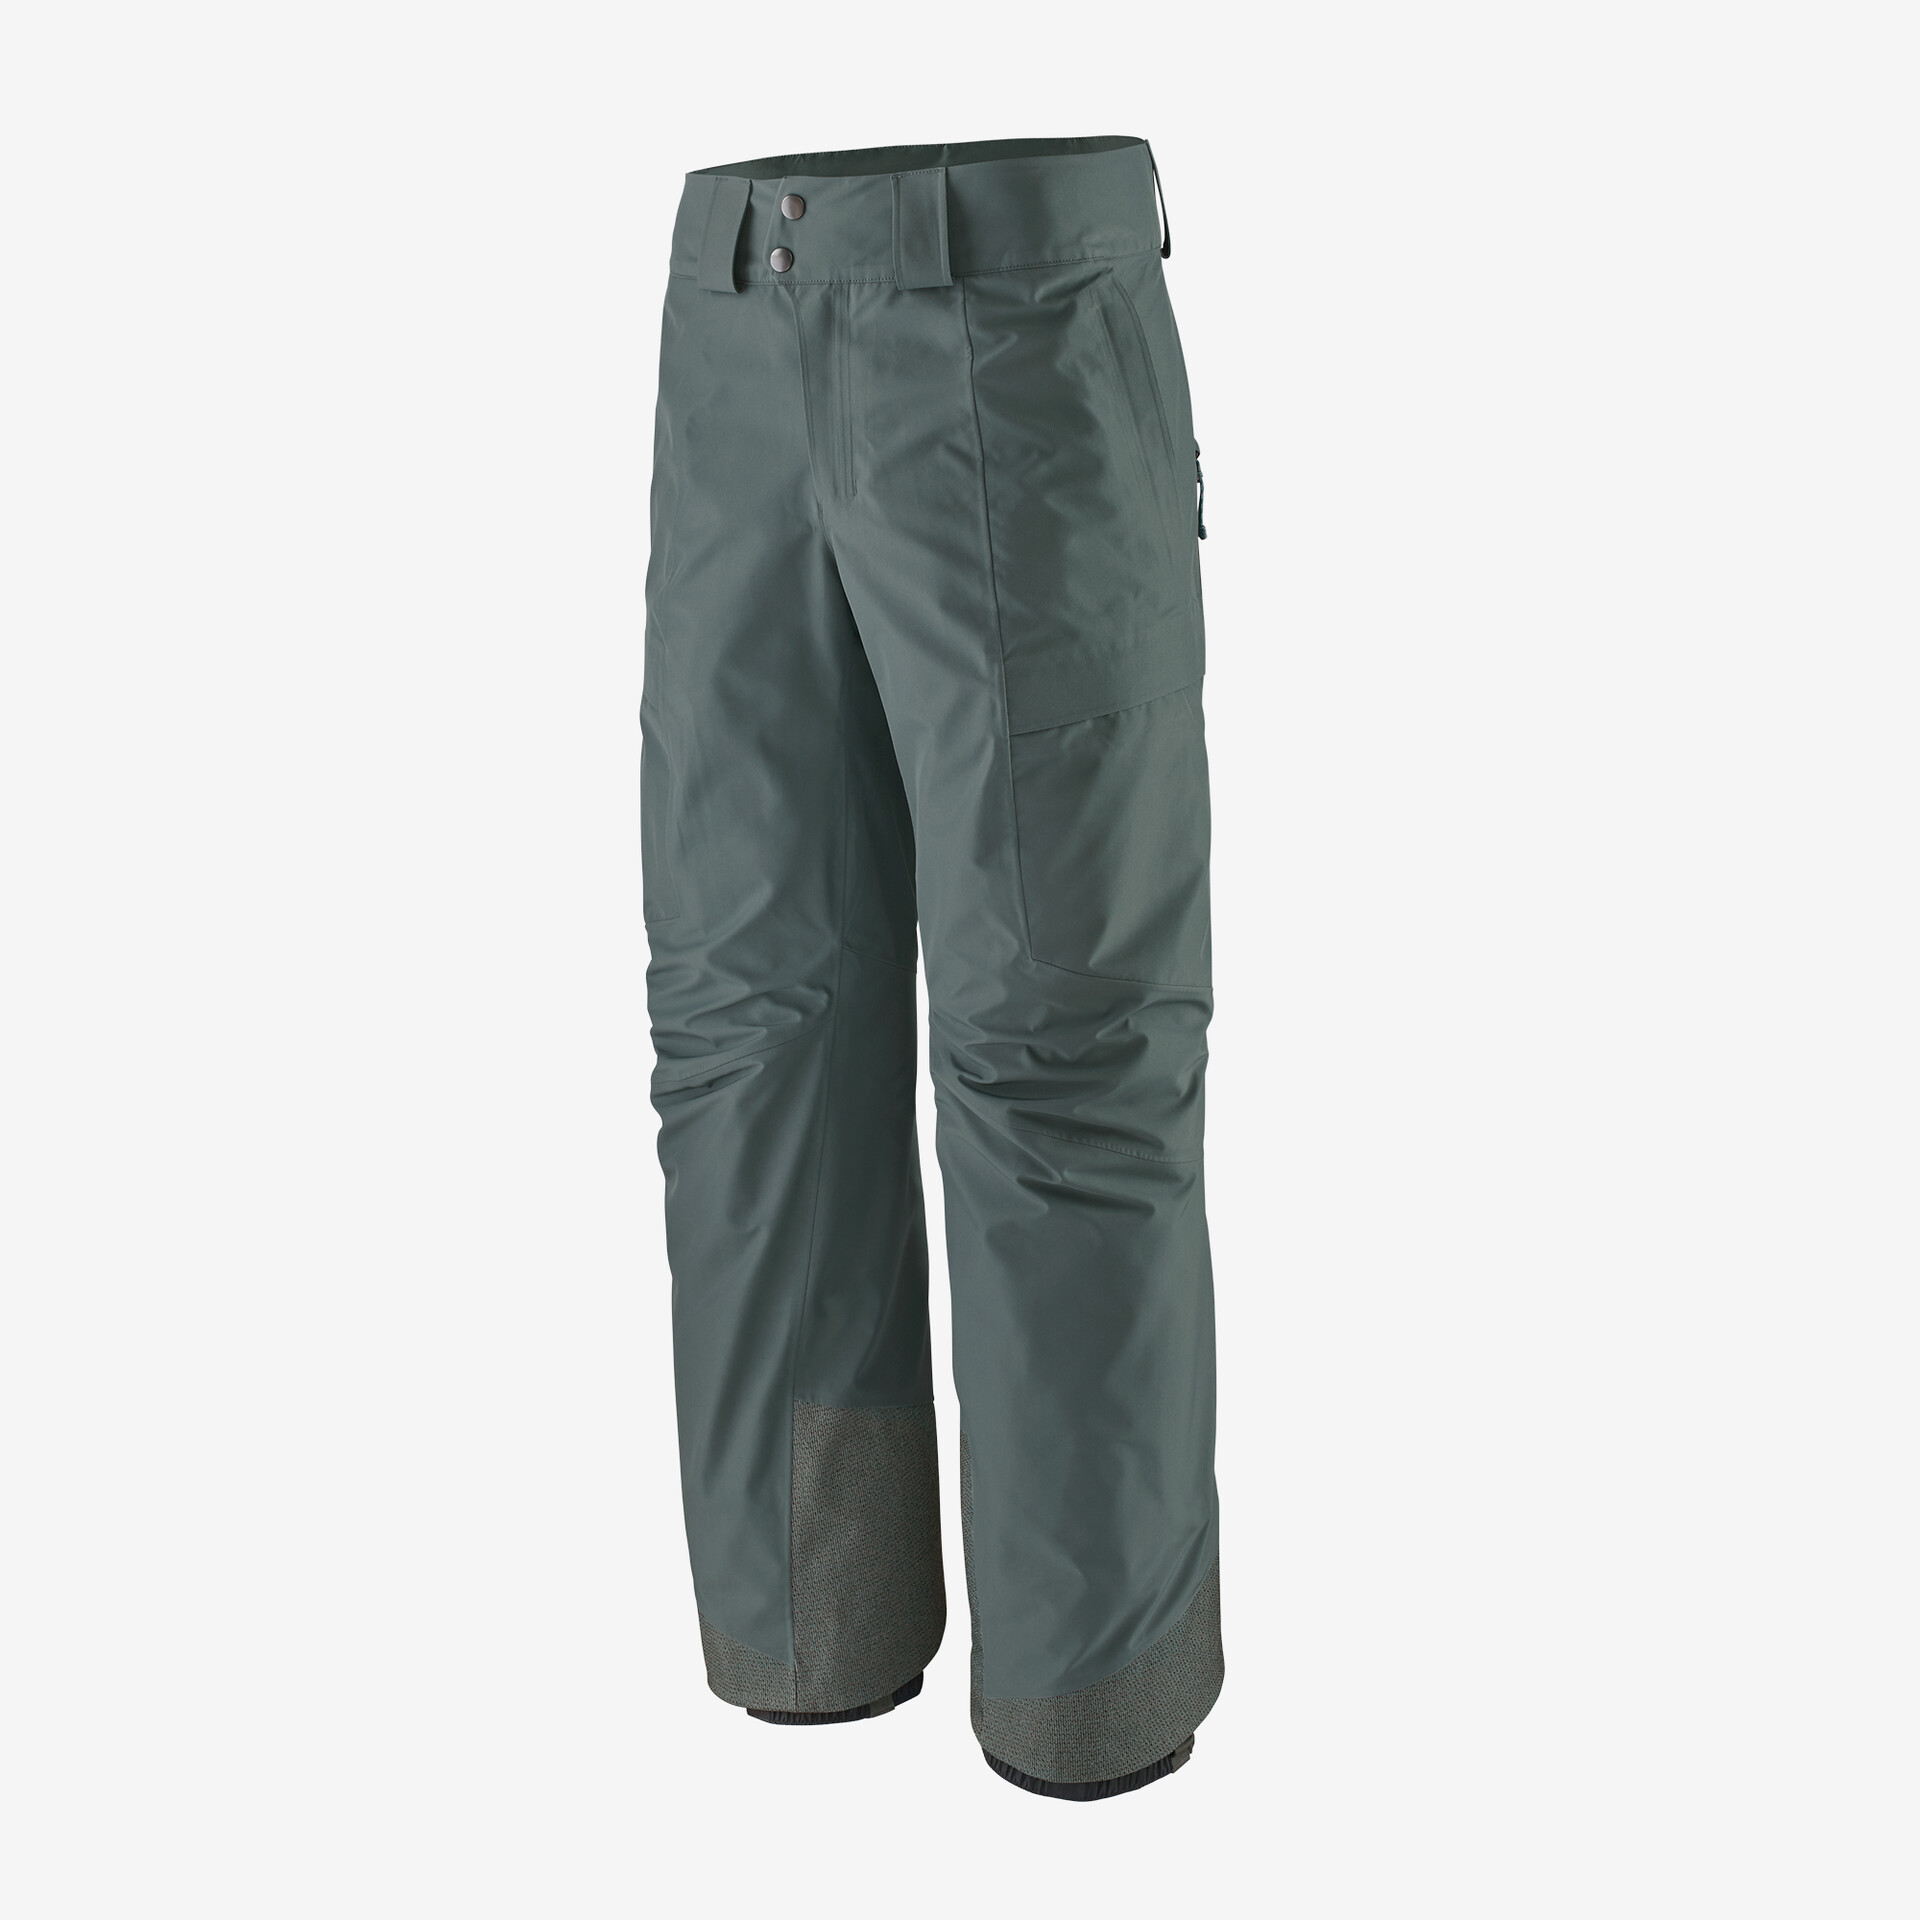 Мужские брюки Storm Shift Patagonia, нуво зеленый